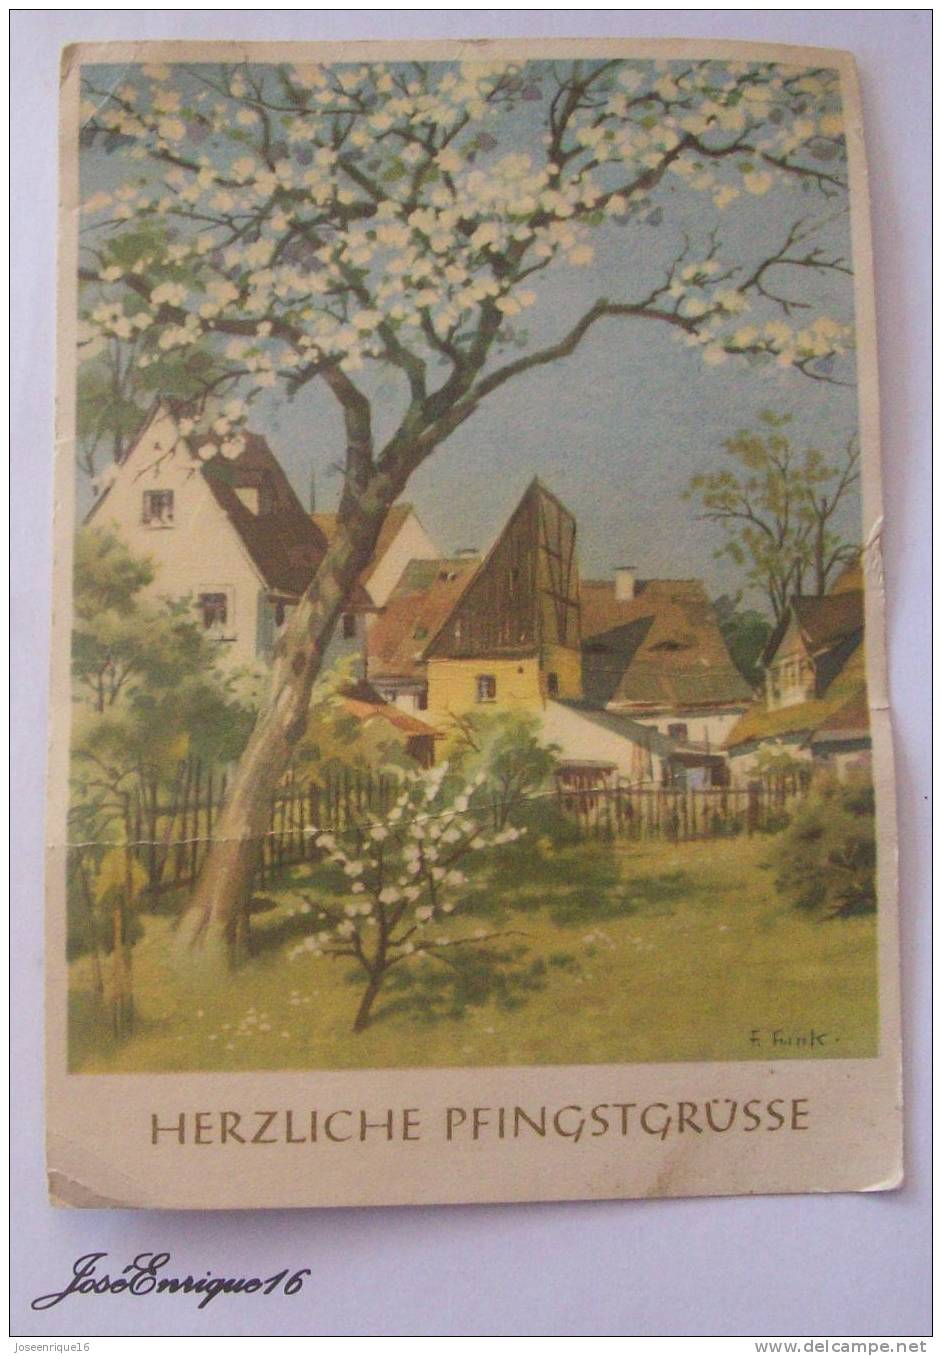 HERZLICHE PFINGSTGRÜSSE - REICHENBACH I.V.  III/29/3  A 1/285/64 - Pinksteren